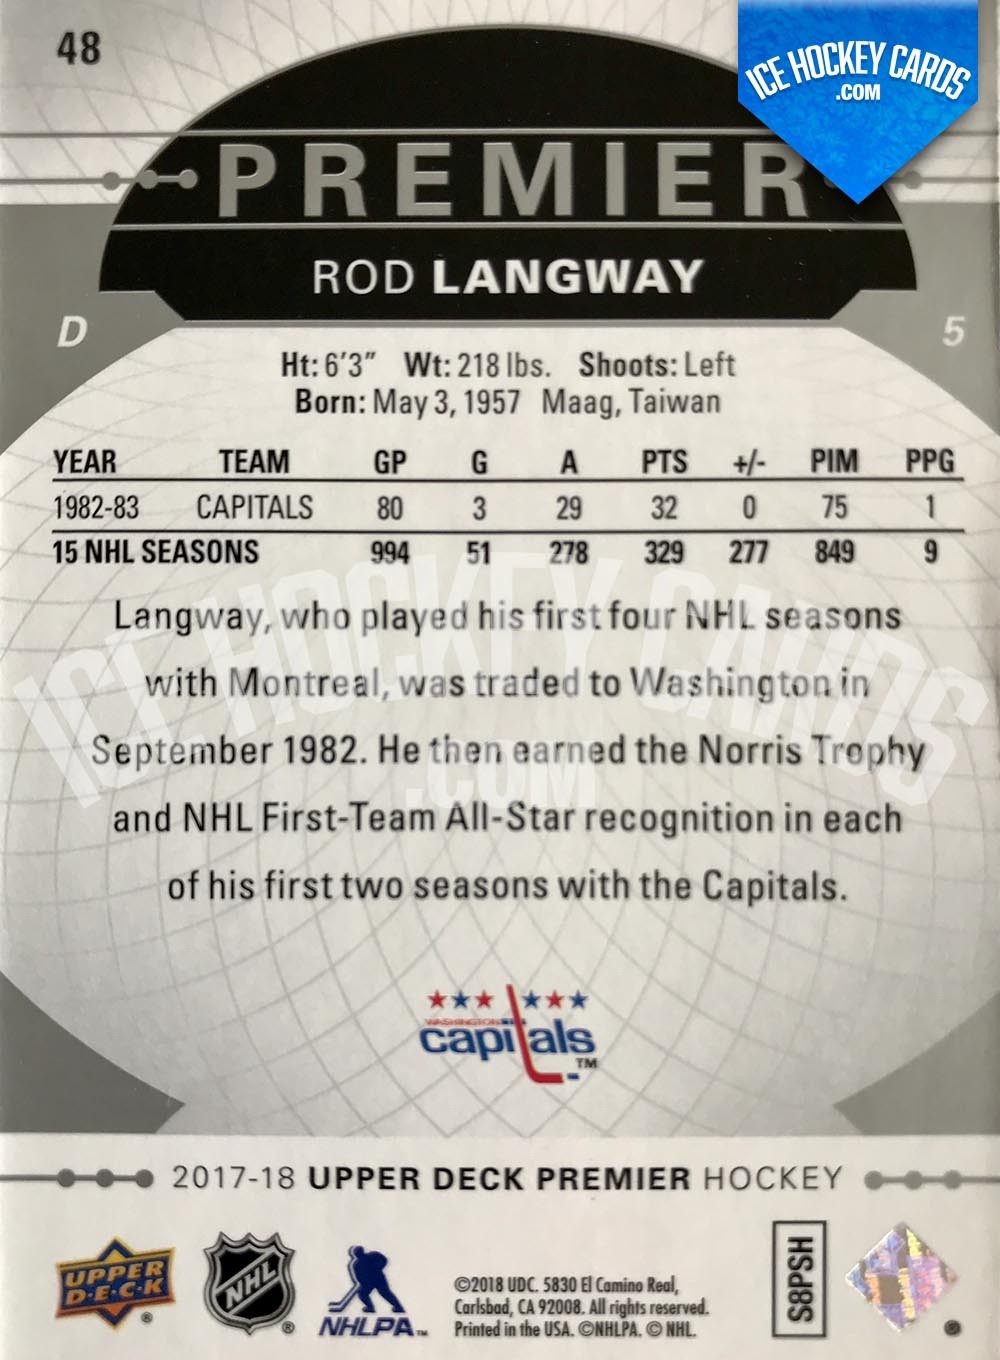 Upper Deck - Premier Hockey 2017-18 - Rod Langway Premier Legend Base Card back